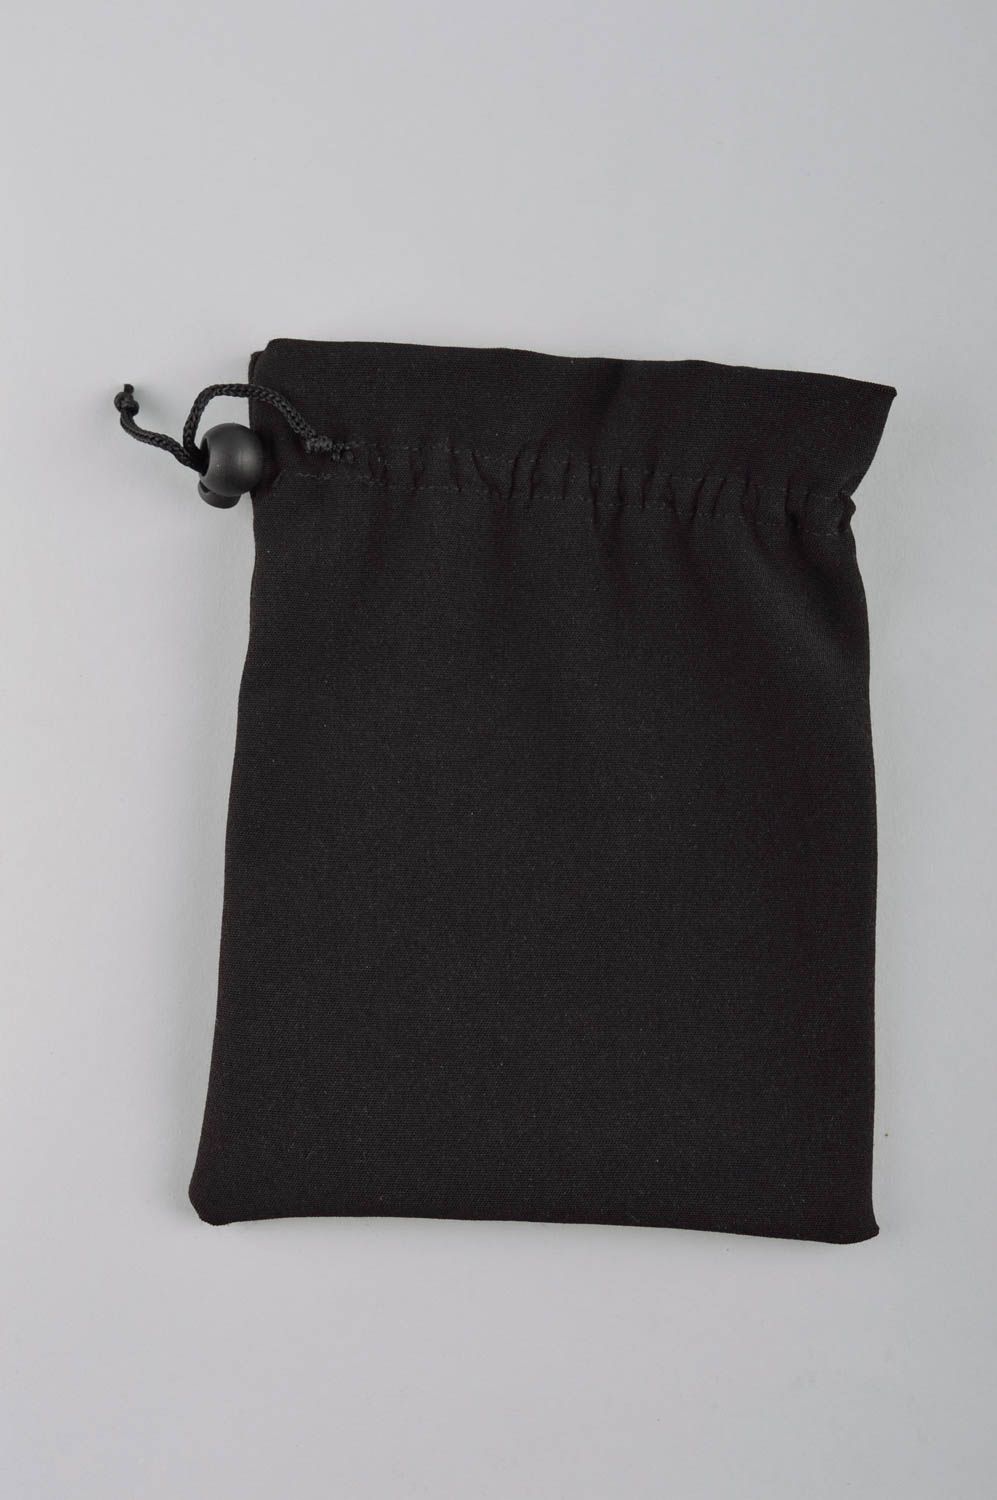 Мешочек для монет ручной работы кошелек из ткани черный женский кошелек фото 3